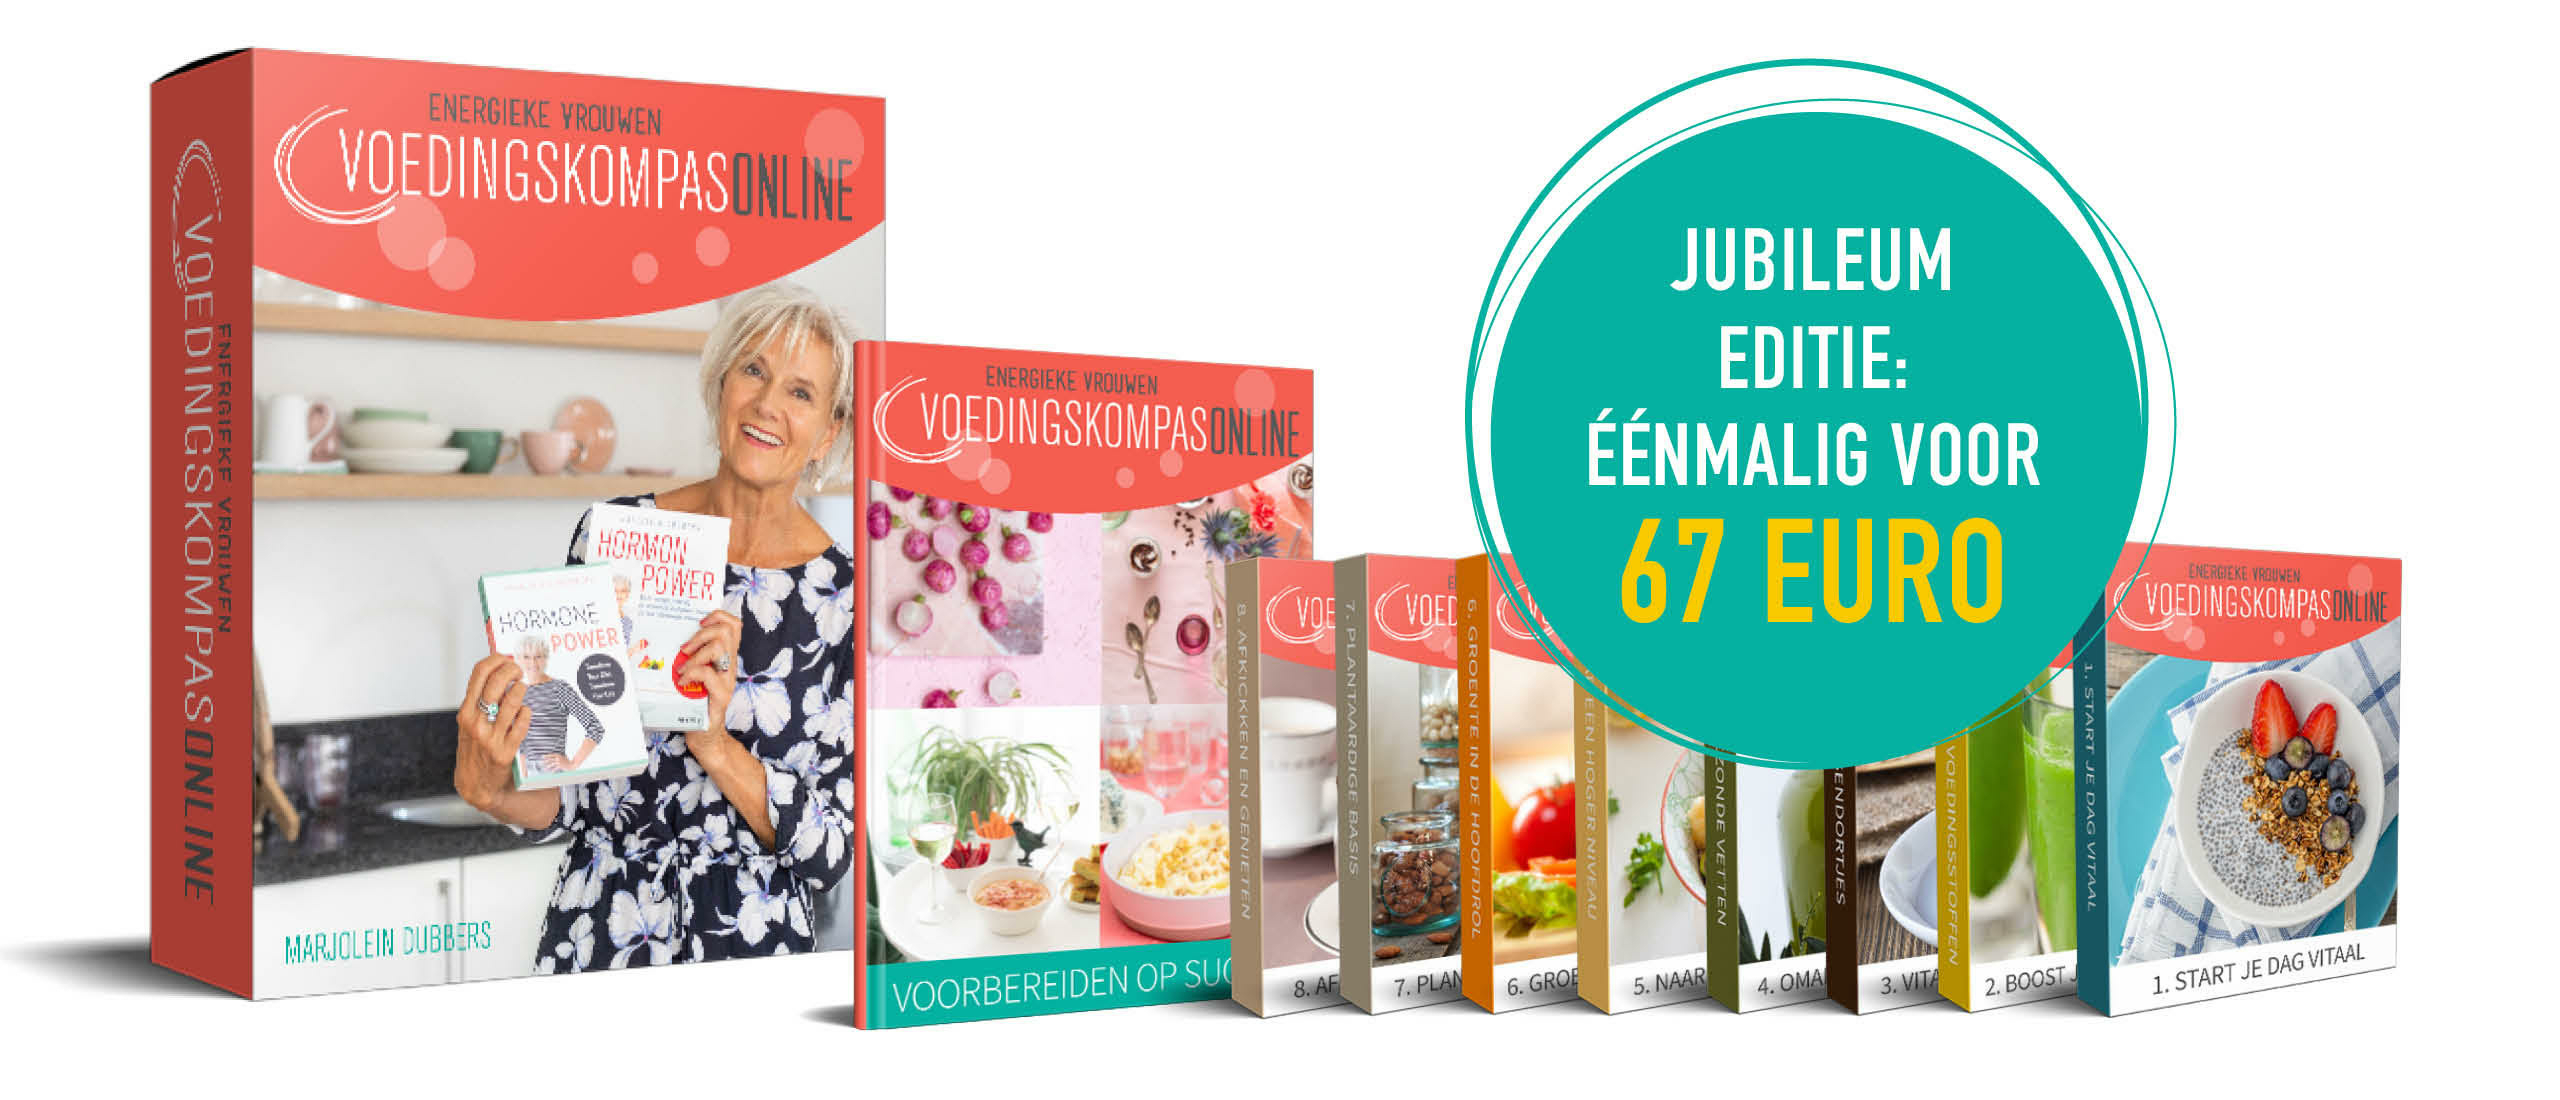 Jubileum editie Voedingskompas: nog nooit zó uitgebreid en nog nooit voor zo'n zacht prijsje!